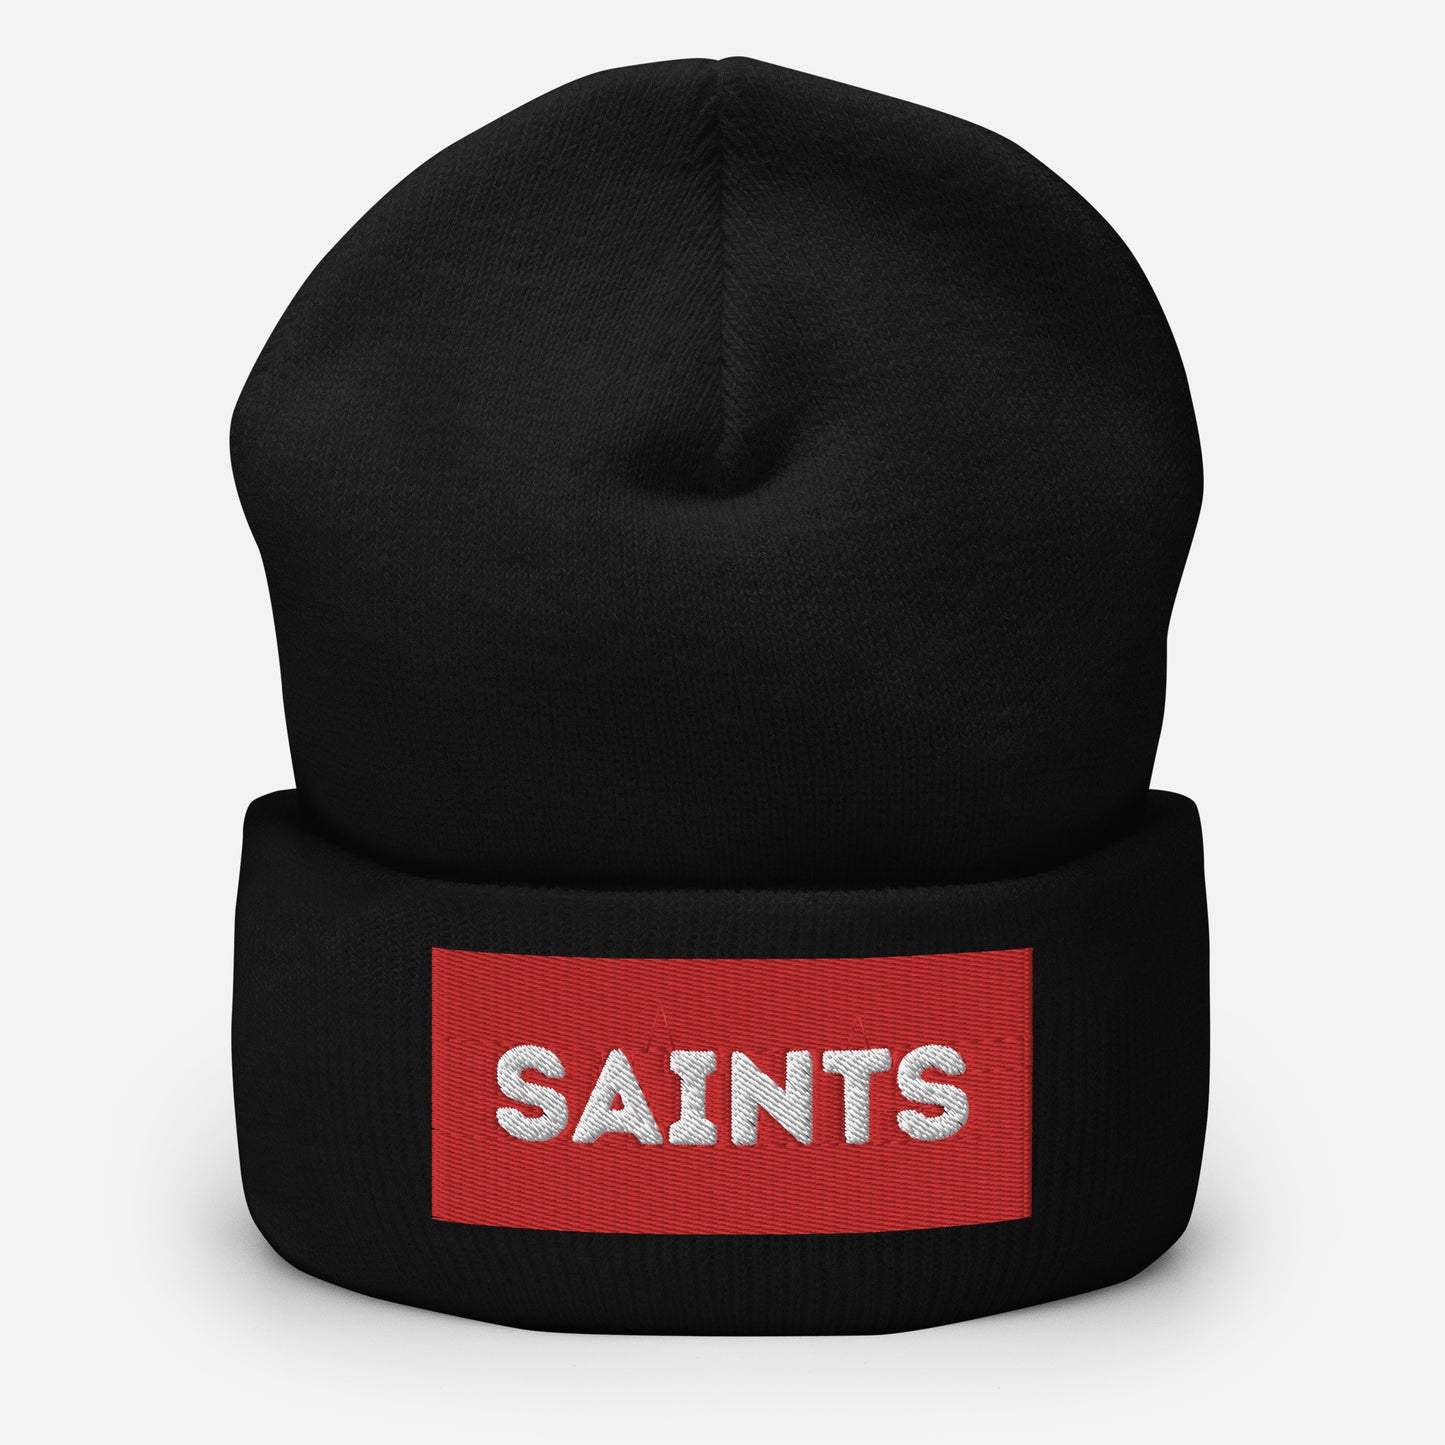 Saints Cuffed Beanie Hat